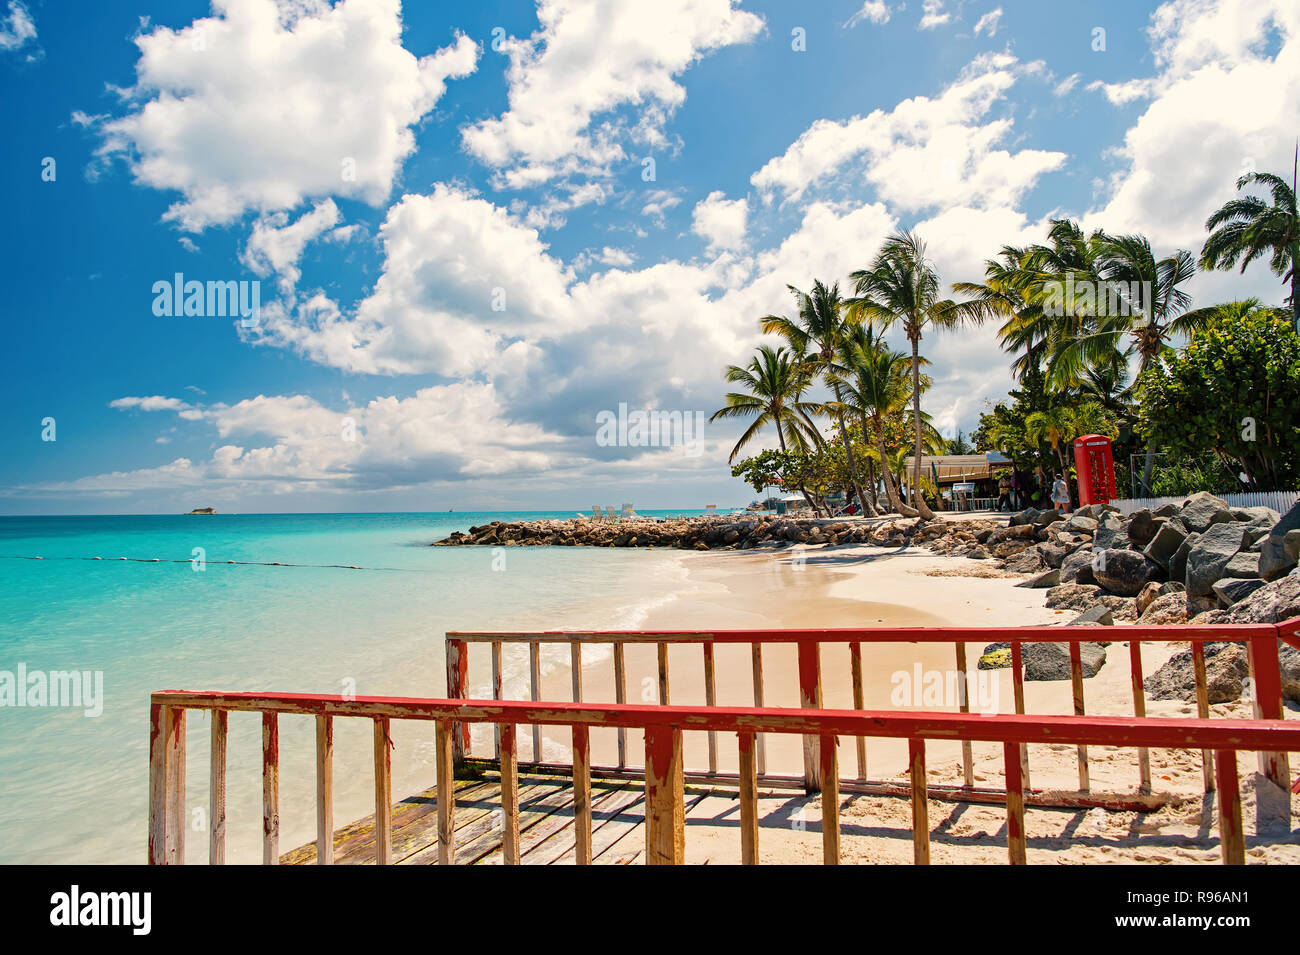 Pier con ringhiera in legno sulla spiaggia tropicale in st Johns, Antigua. Seascape con acqua turchese e verde delle palme, sabbia bianca sulla giornata di sole su nuvoloso cielo blu. La vacanza estiva concetto. Foto Stock